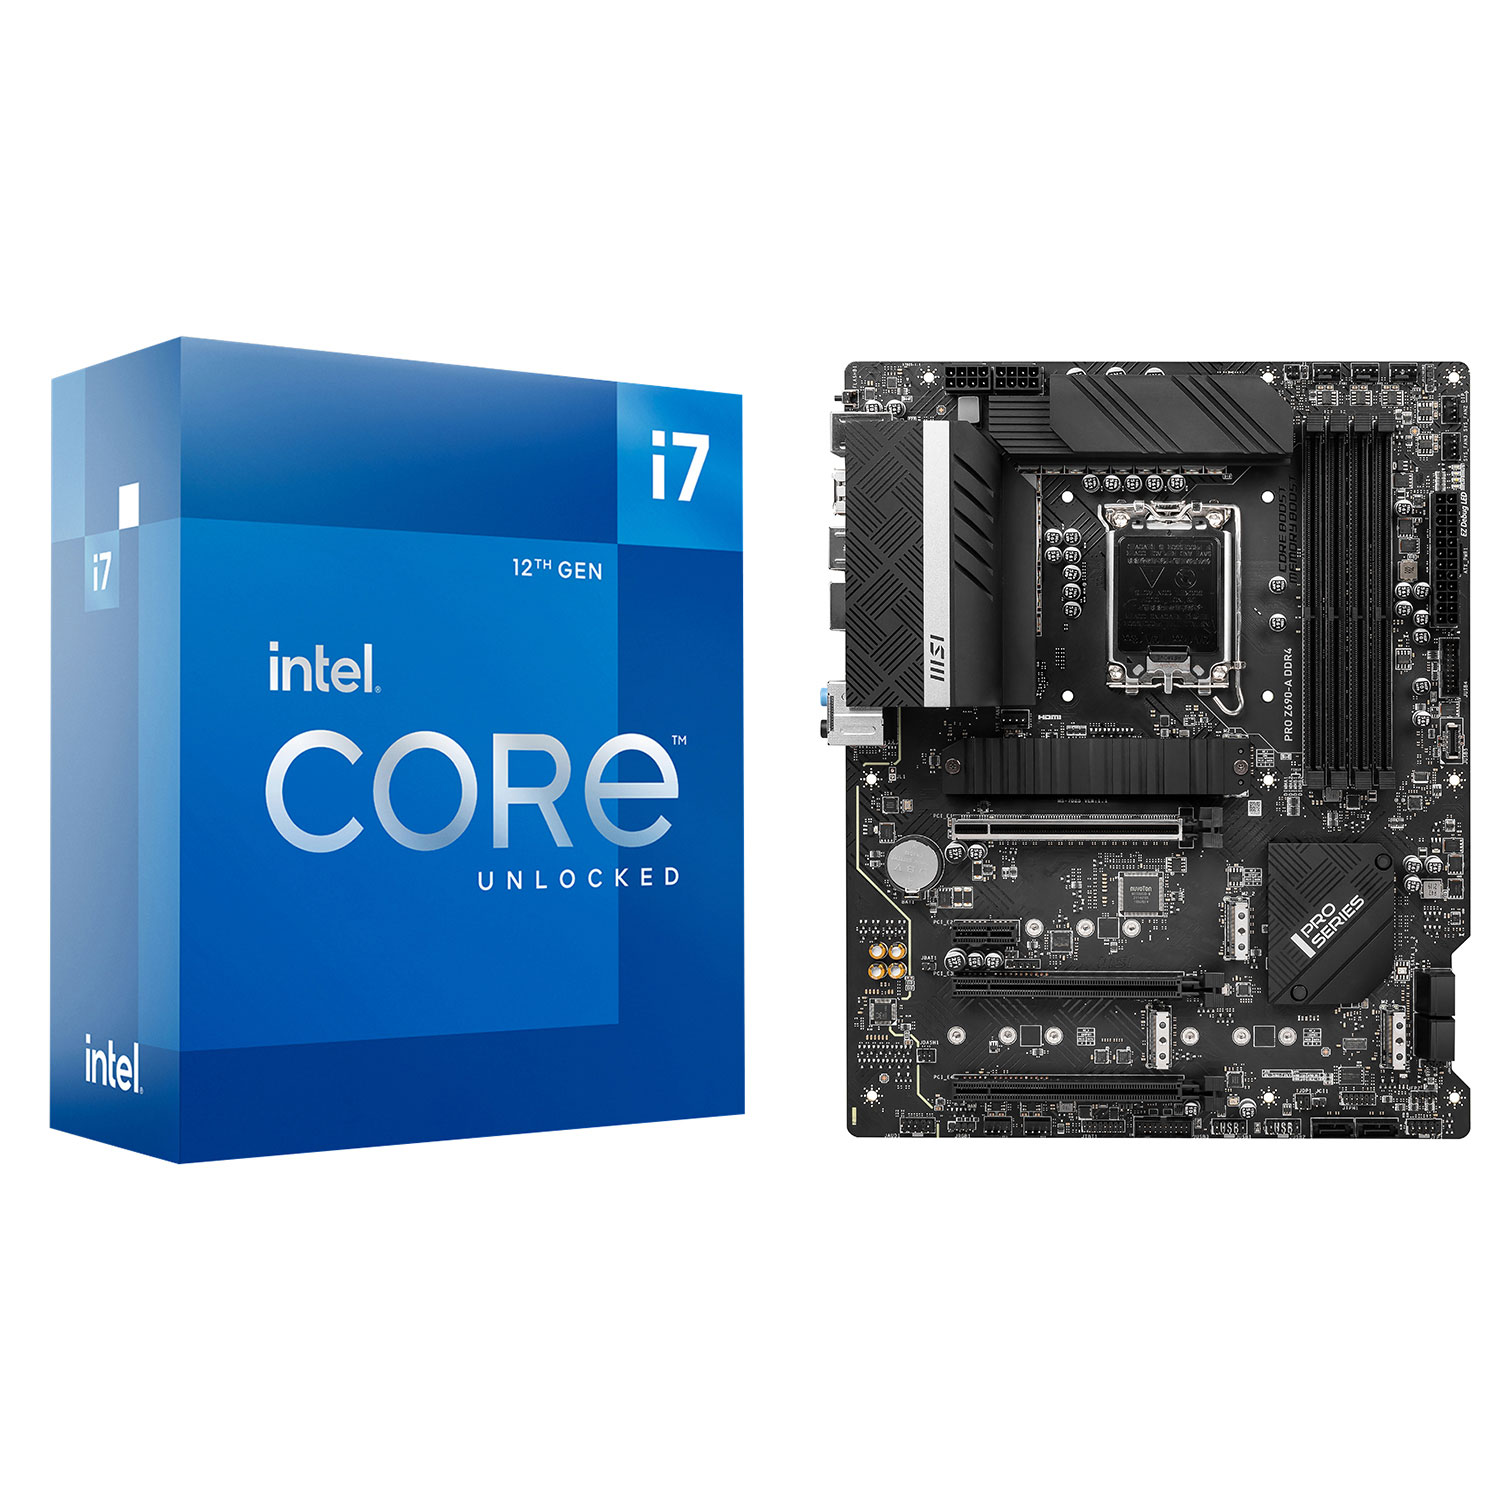 Intel Core i7-12700K Octa-Core 3.6GHz Processor & DDR4 ATX LGA 1700 Motherboard